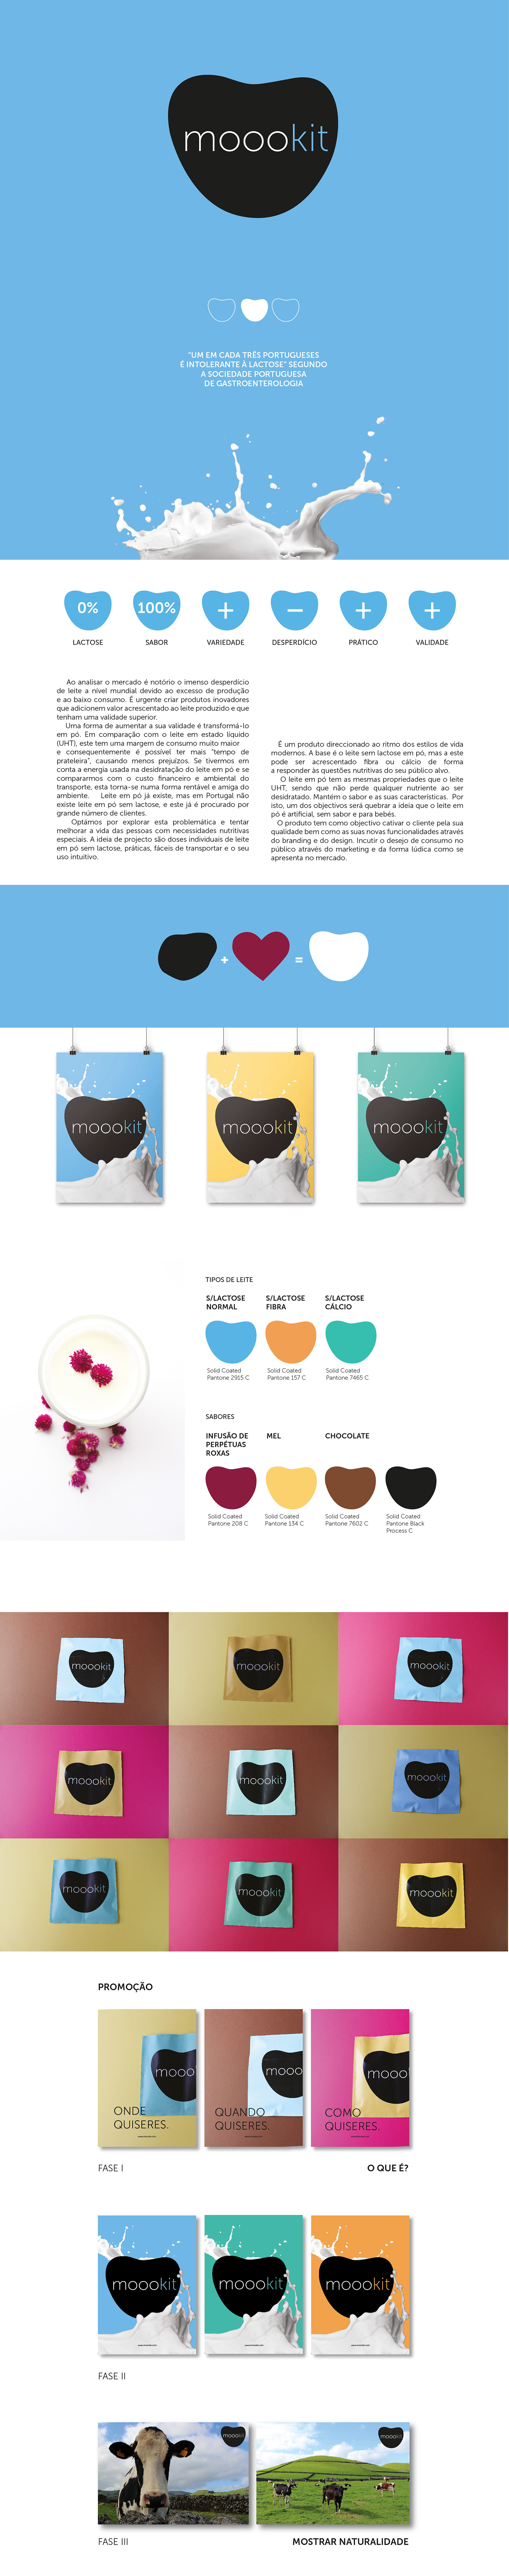 moookit powdered milk Lactose free milk product design  New brand strategic design milk graphic design 